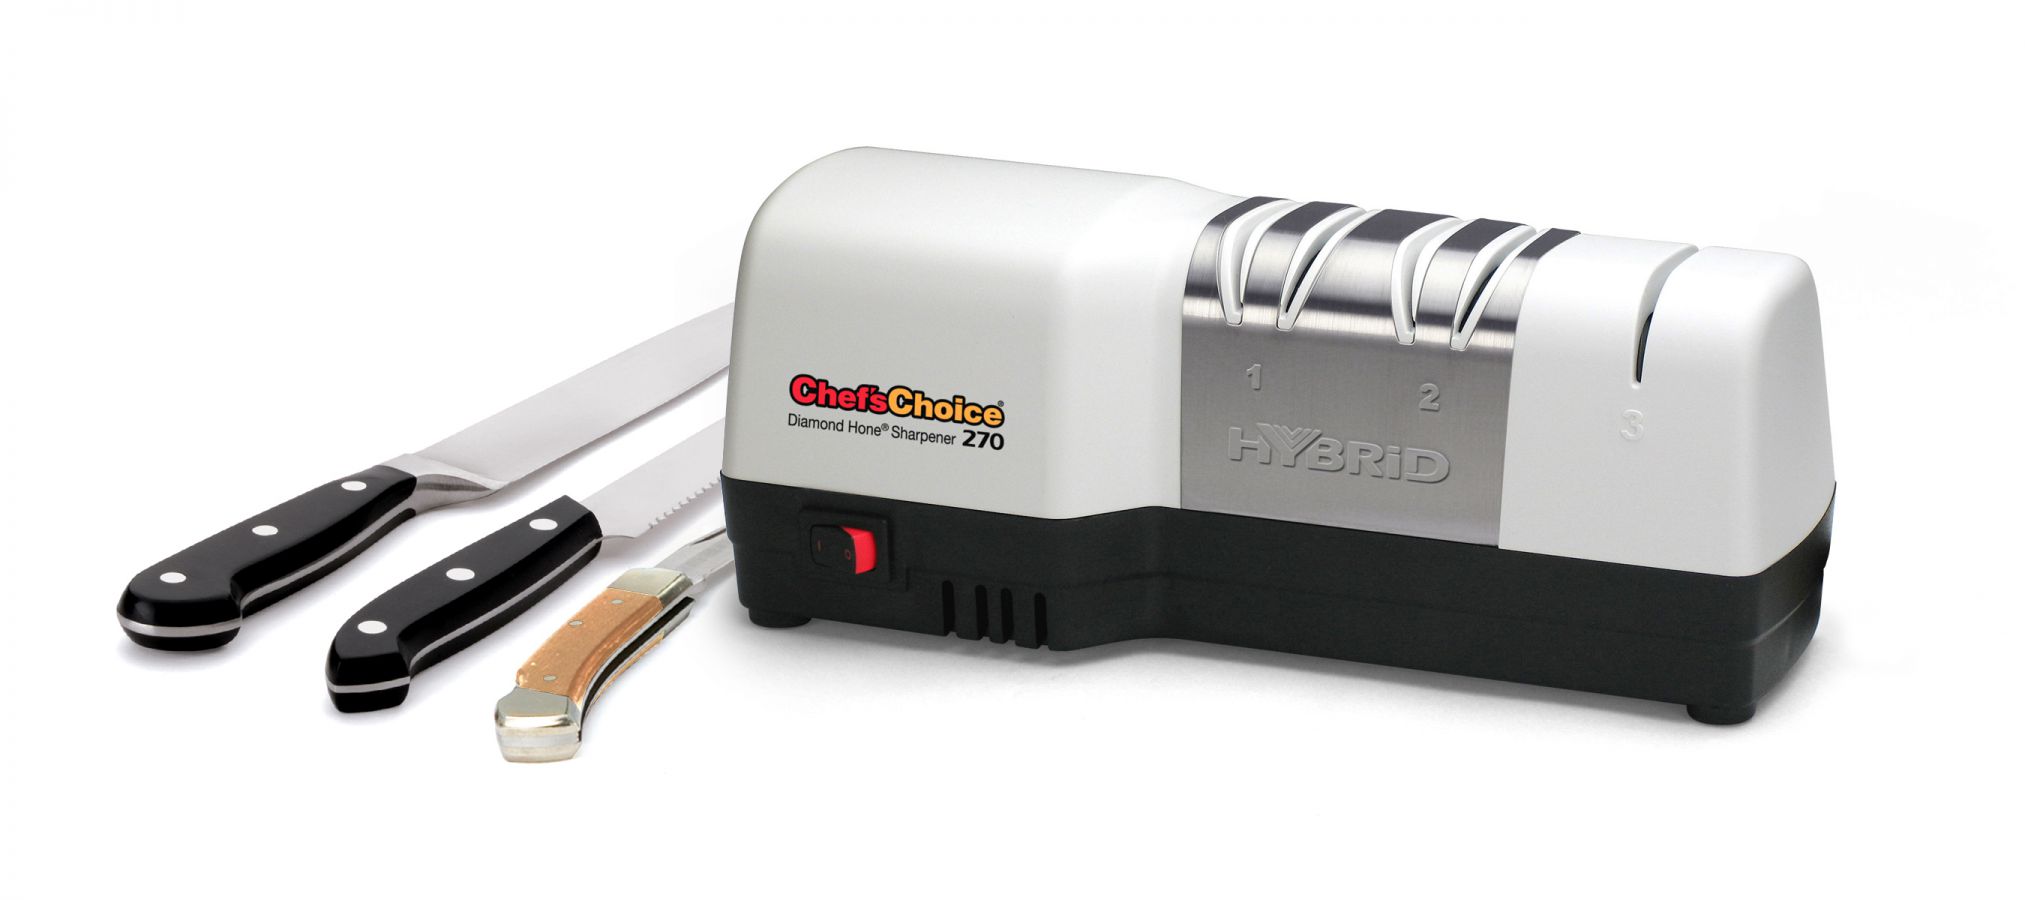 Электрическая точилка для ножей Chefs Choice 270 (CH 270) за 15290 руб., фото 2